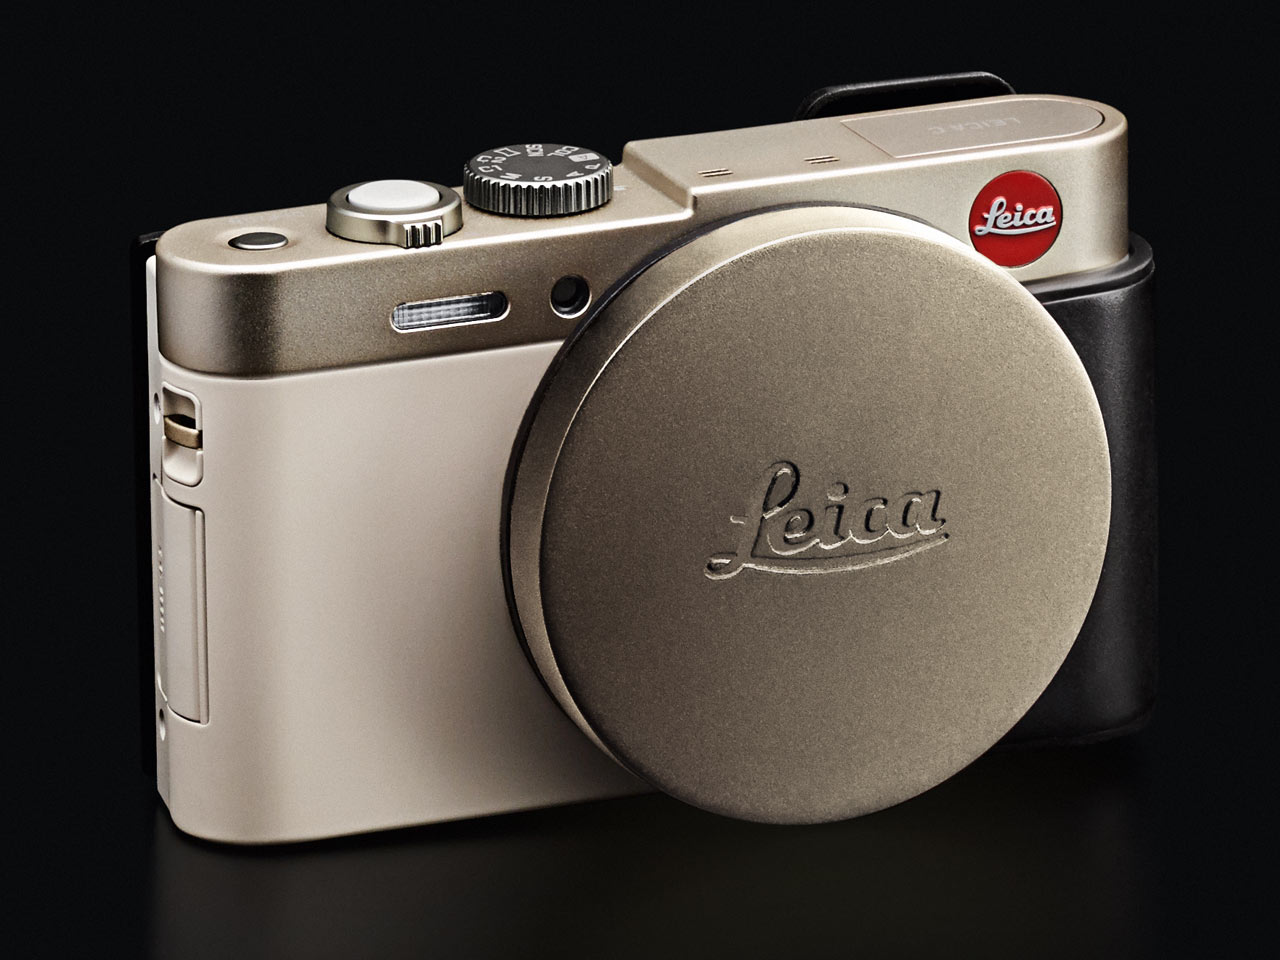 Leica C: Máy ảnh compact “giá rẻ”, chất lượng